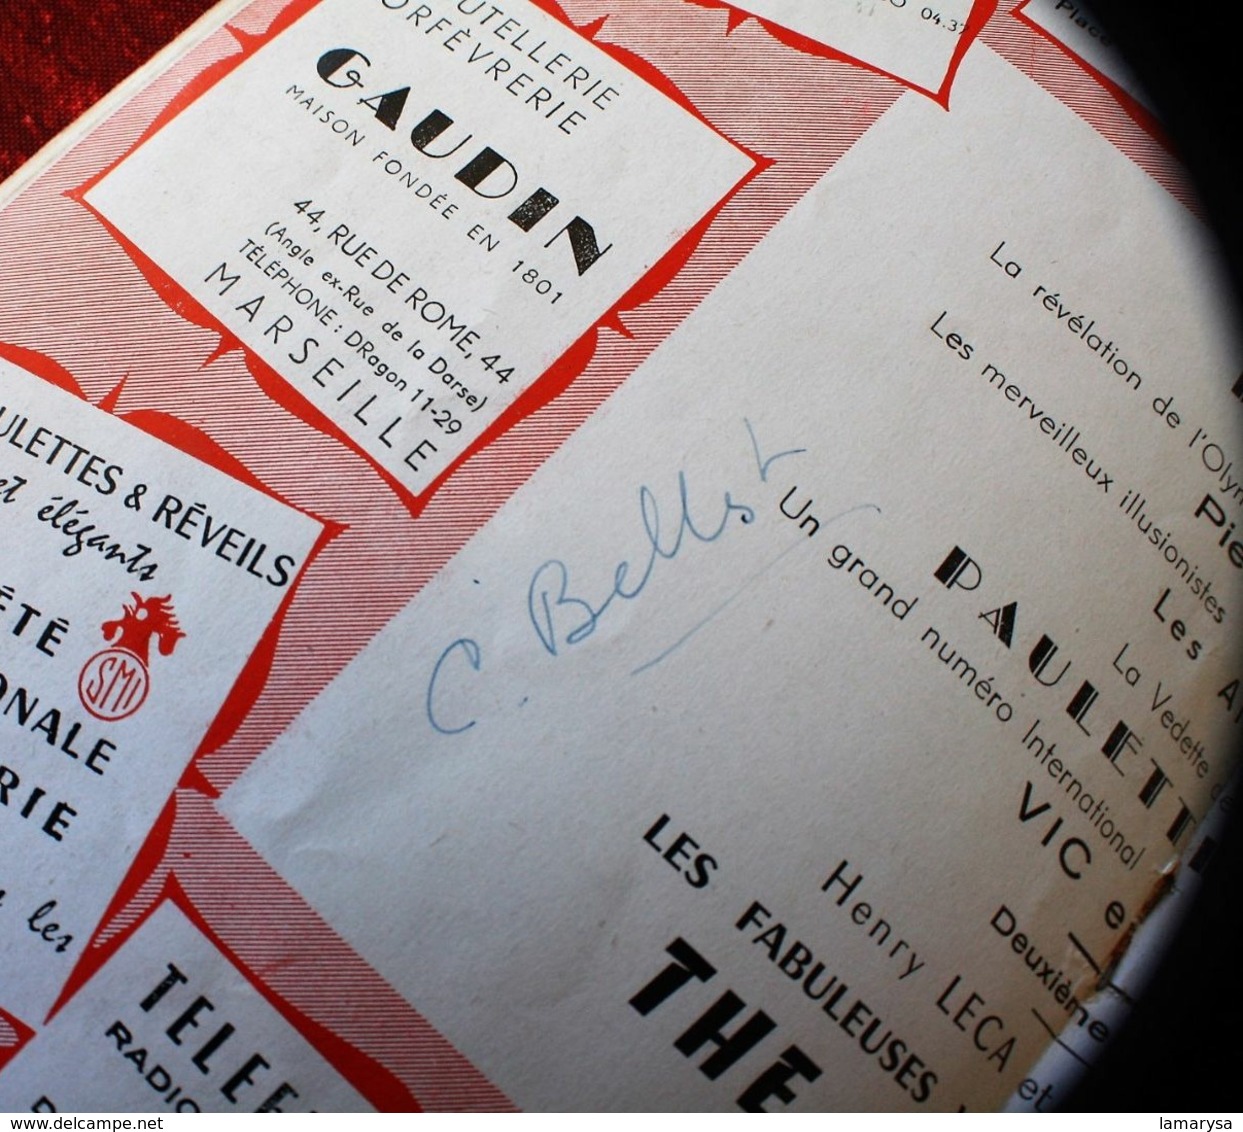 FABULEUX" THE PLATTERS " 2+1 VÉRITABLES AUTOGRAPHE DÉDICACE-OPÉRA MARSEILLE 1957-PIERRE PERRET-PAULETTE ROLLIN- - Programas